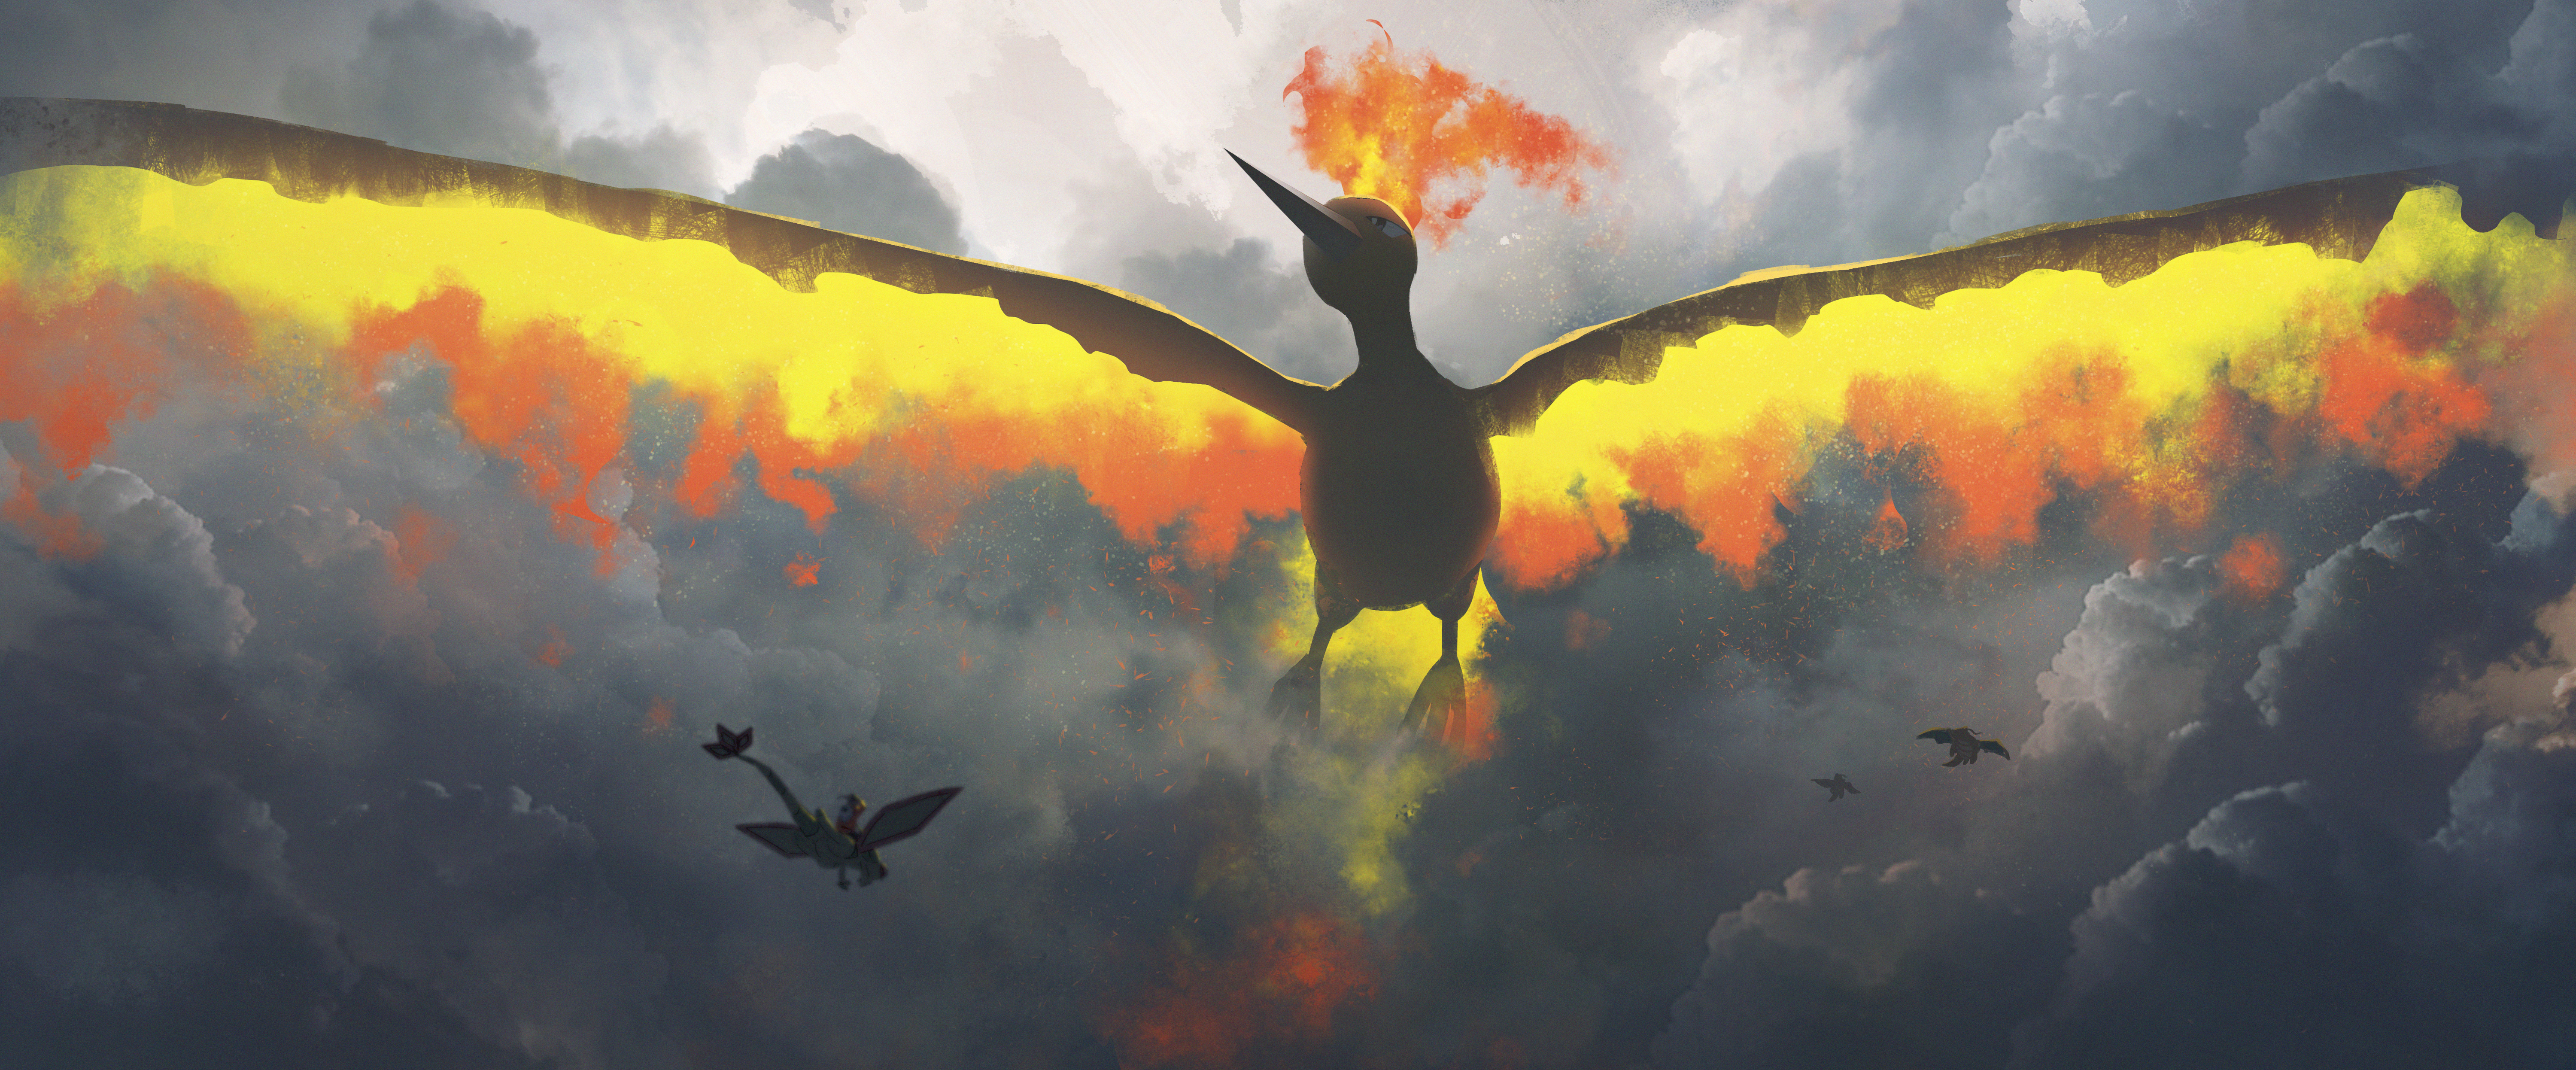 Anime 6000x2492 Asteroid (artist) Pokémon anime Moltres Flygon Dragonite Charizard Pixiv